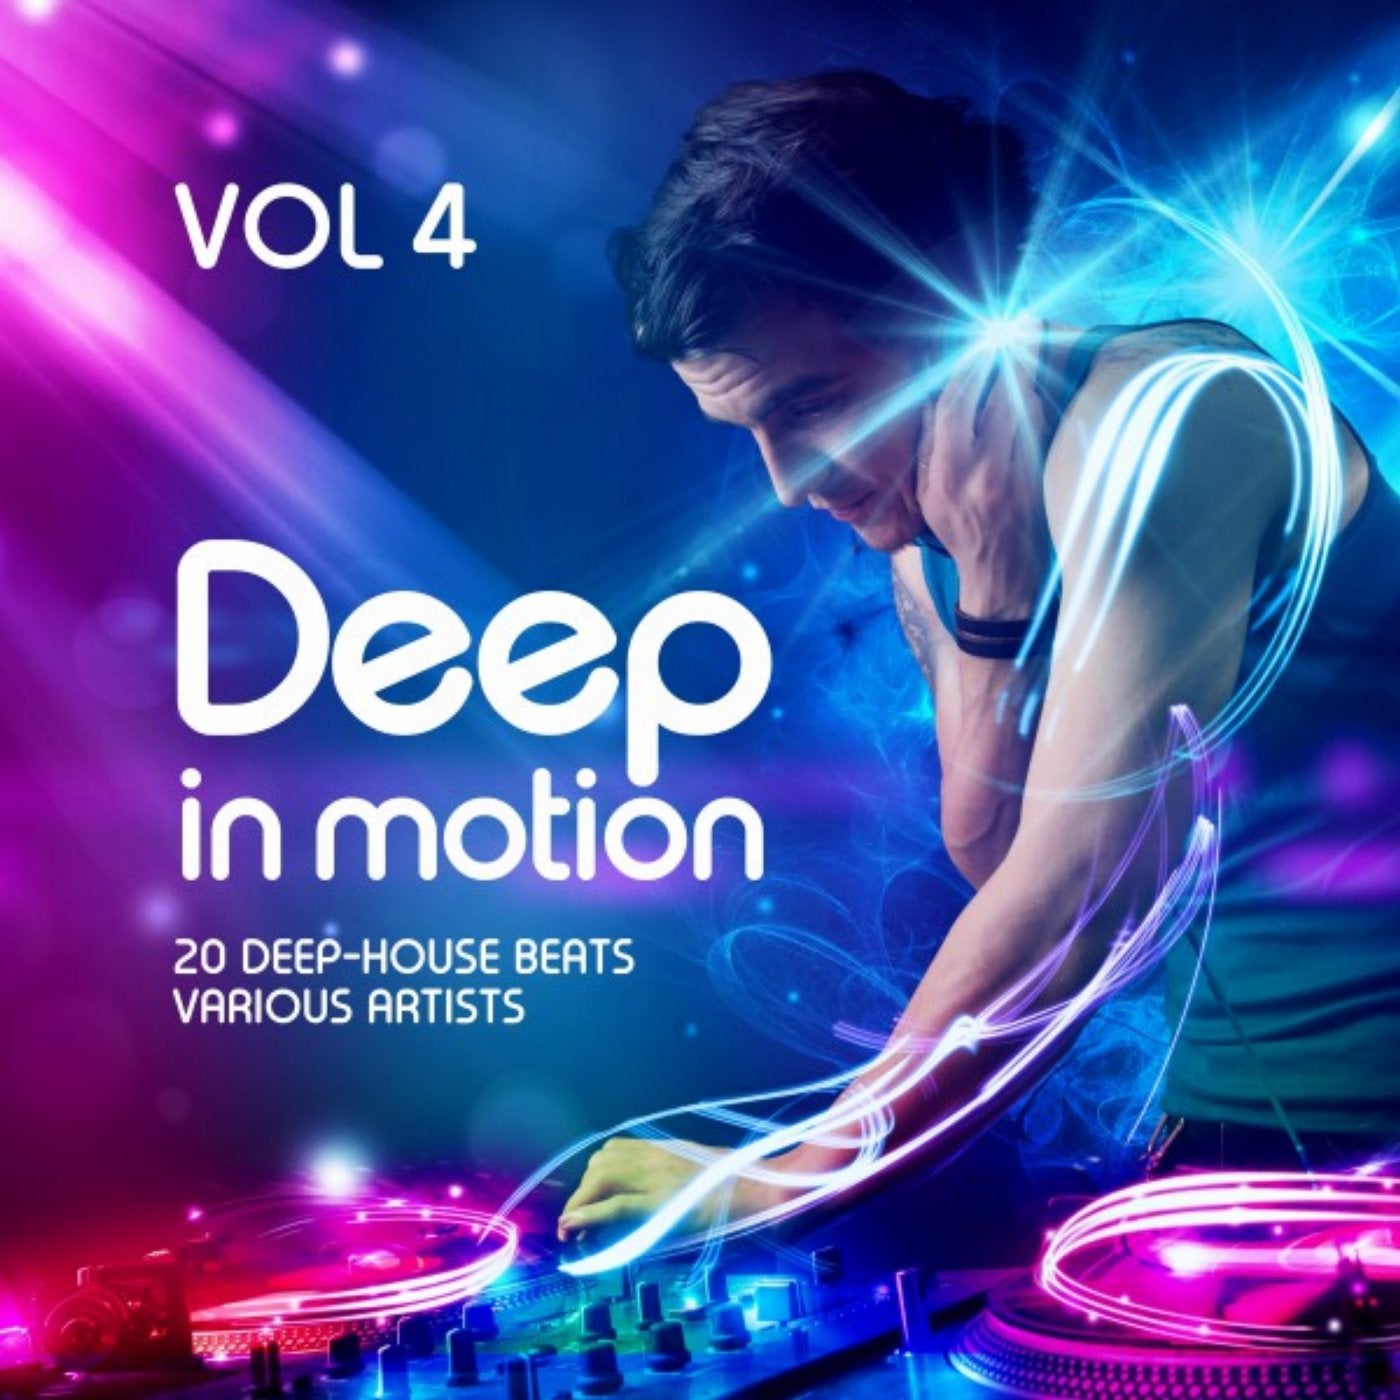 Deep in Motion, (20 Deep-House Beats) Vol. 4